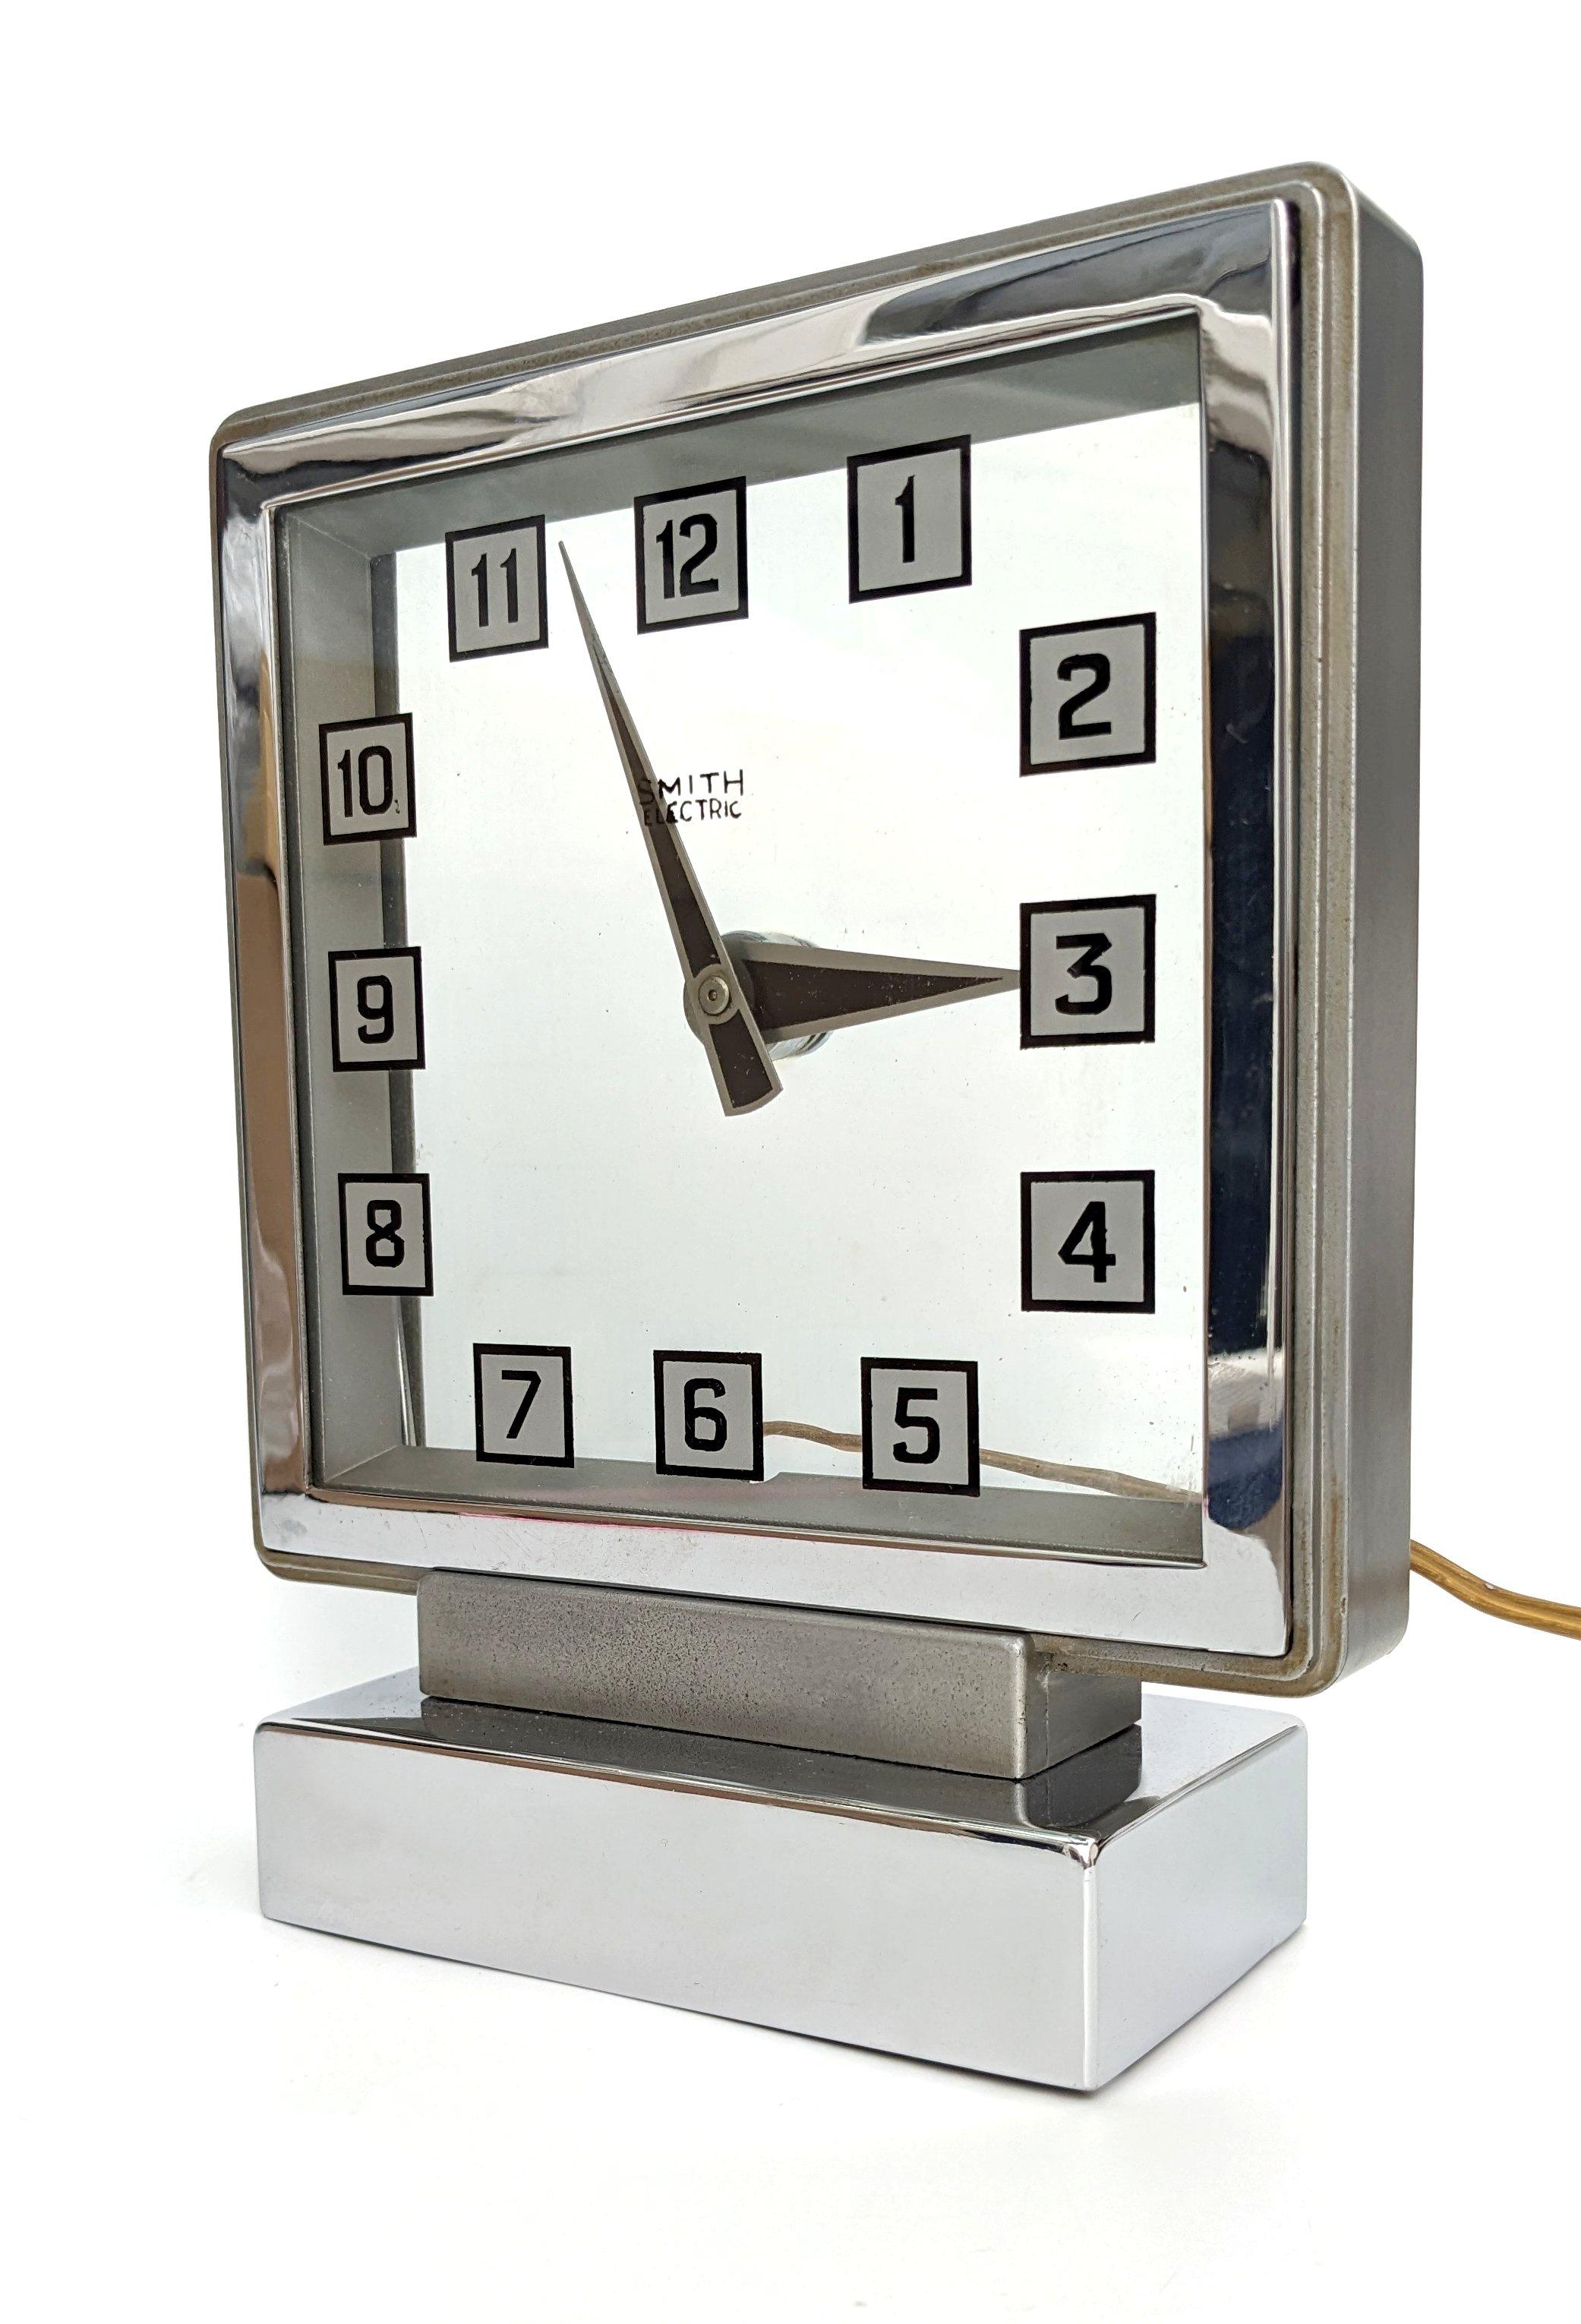 Nous vous proposons cette horloge mystère Smith, fabriquée par Smith's Electronic Clocks. Le boîtier chromé a été moulé en aluminium. Le verre présente des chiffres noirs sur un fond carré argenté avec une bordure noire. La vitre arrière contient